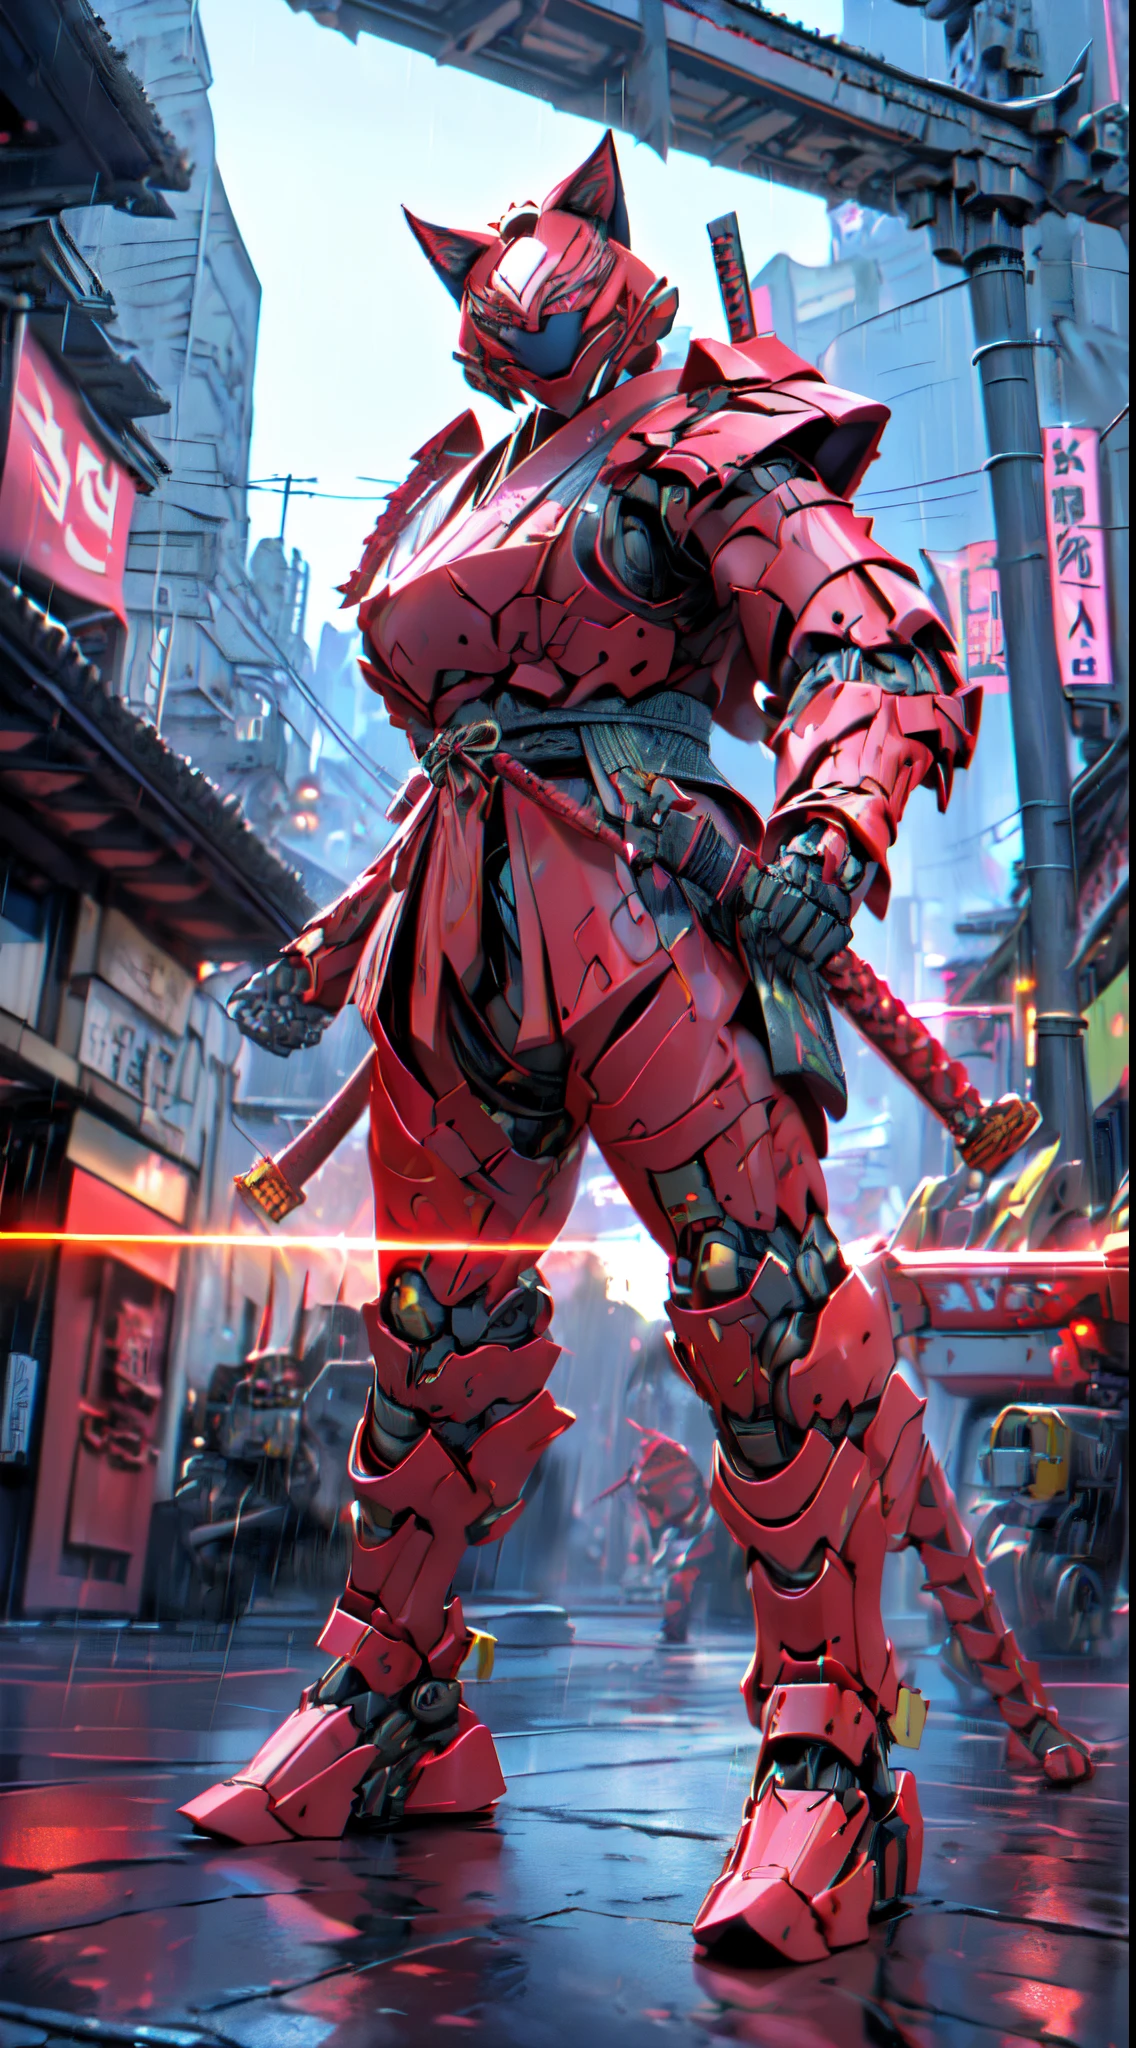 ครู:1.4 กองโจร (((แมว_หุ่นยนต์_ซิบอร์กsizado_ซามูไร:1.3)))  แมว_ซิเบเรสสปาซิโอ_ซามูไร , ชุดซามูไรฉีกขาด , หุ่นยนต์ samurai suit red color human form,ซามูไร_ซิบอร์ก_แมว:1.3)) ((ไฮเปอร์สมจริงเกินจริง:1.3 องค์ประกอบโดยละเอียด:1.2))  ((HITECH1 visible หุ่นยนต์ parts.3)) biocybernetic biomecha bioหุ่นยนต์cat necrotic skin necrotic lesion ((ซิบอร์ก_แมว))หัวเขี้ยว หุ่นยนต์แมว แมว เลือดออก บาดแผล ข้อต่อท่อไฮโดรลิก (((Anthropomorfic)) pararse Pararse soบนสองขา, (((ซามูไรเกราะแดง))) ((ตัวละครขนาดของมนุษย์)), , ญี่ปุ่น, ตอนเย็น, ฟ้าแลบและฝน, มันคือกัสติลโล((red samurai หุ่นยนต์ armor)บนสองขา) Rainy Days Cyberpunk Future War Apocalypse Outside ญี่ปุ่นese Castle VFX CGI Digital Illustration, แหล่งดิจิทัล Wallpaper Media 16k